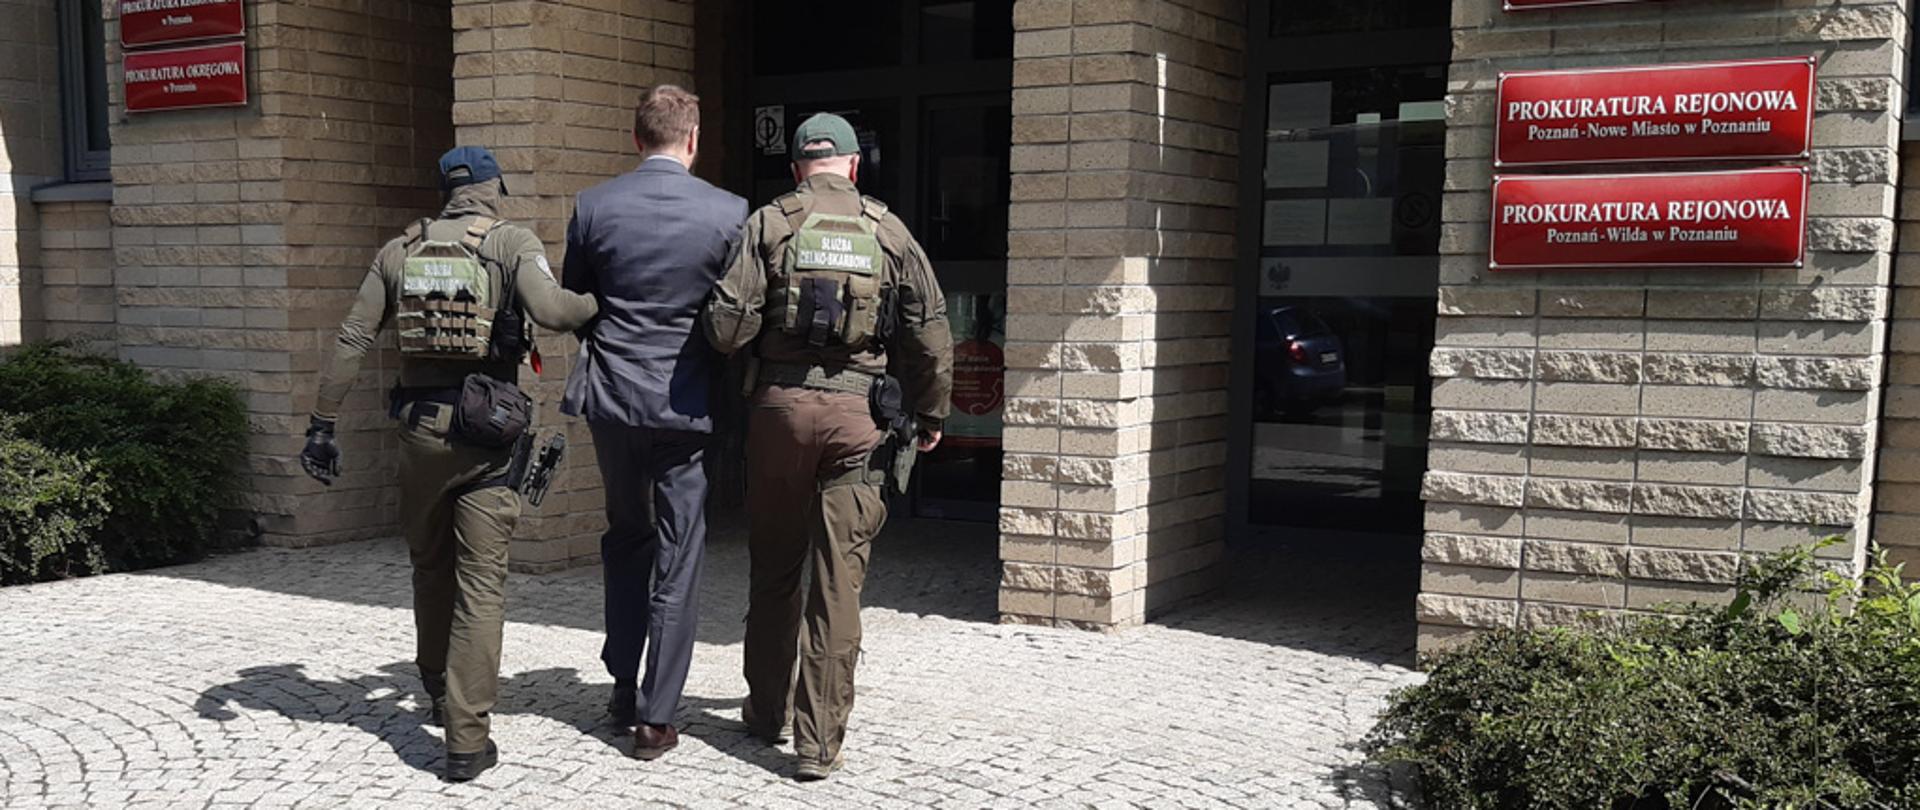 Funkcjonariusze Służby Celno-Skarbowej przed wejściem do Prokuratury, prowadzą zatrzymanego.